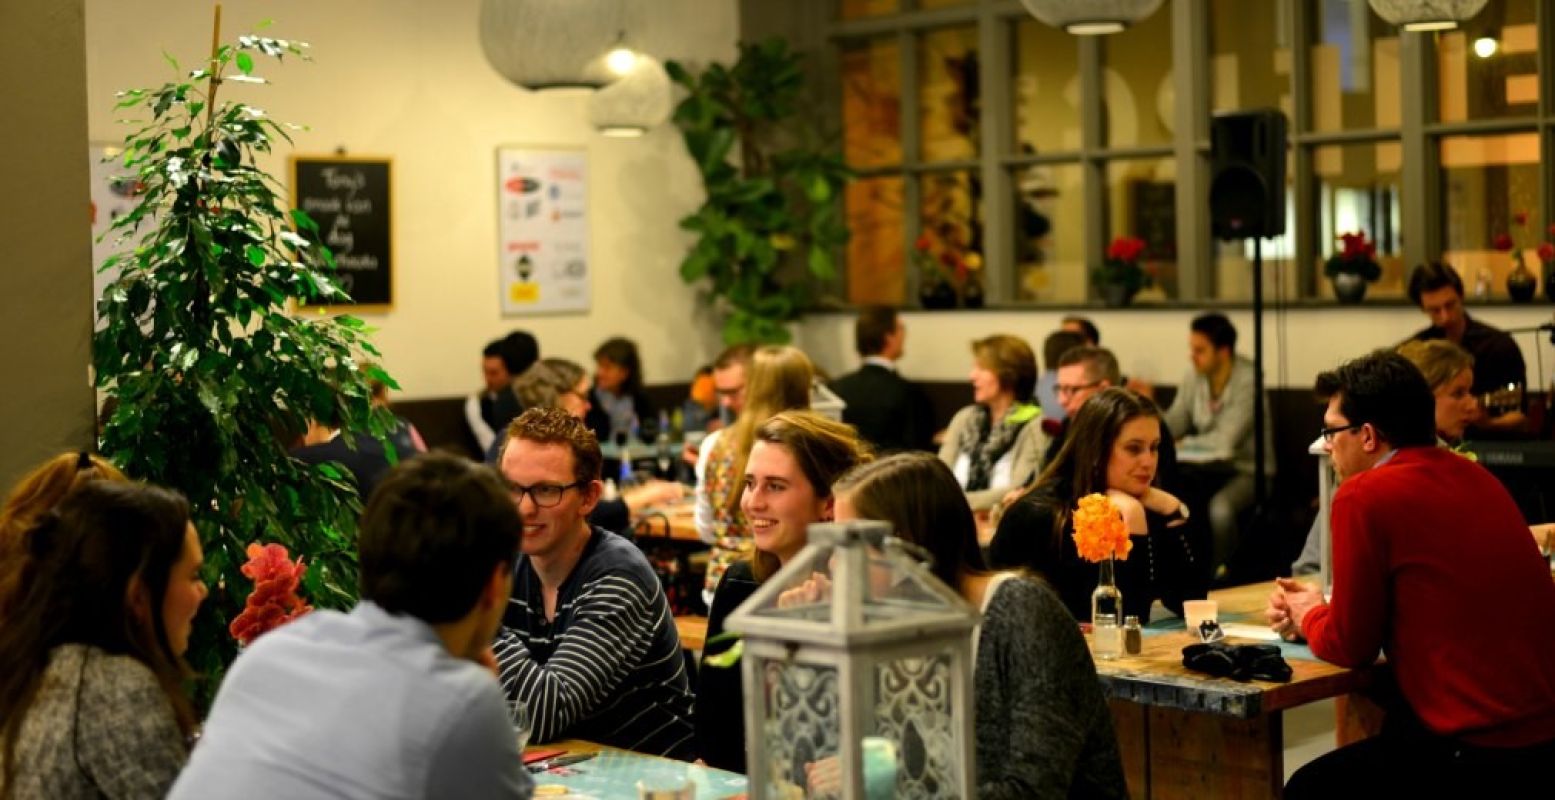 Happietaria wordt volledig gerund door vrijwilligers. Foto: Happietaria Leiden 2017